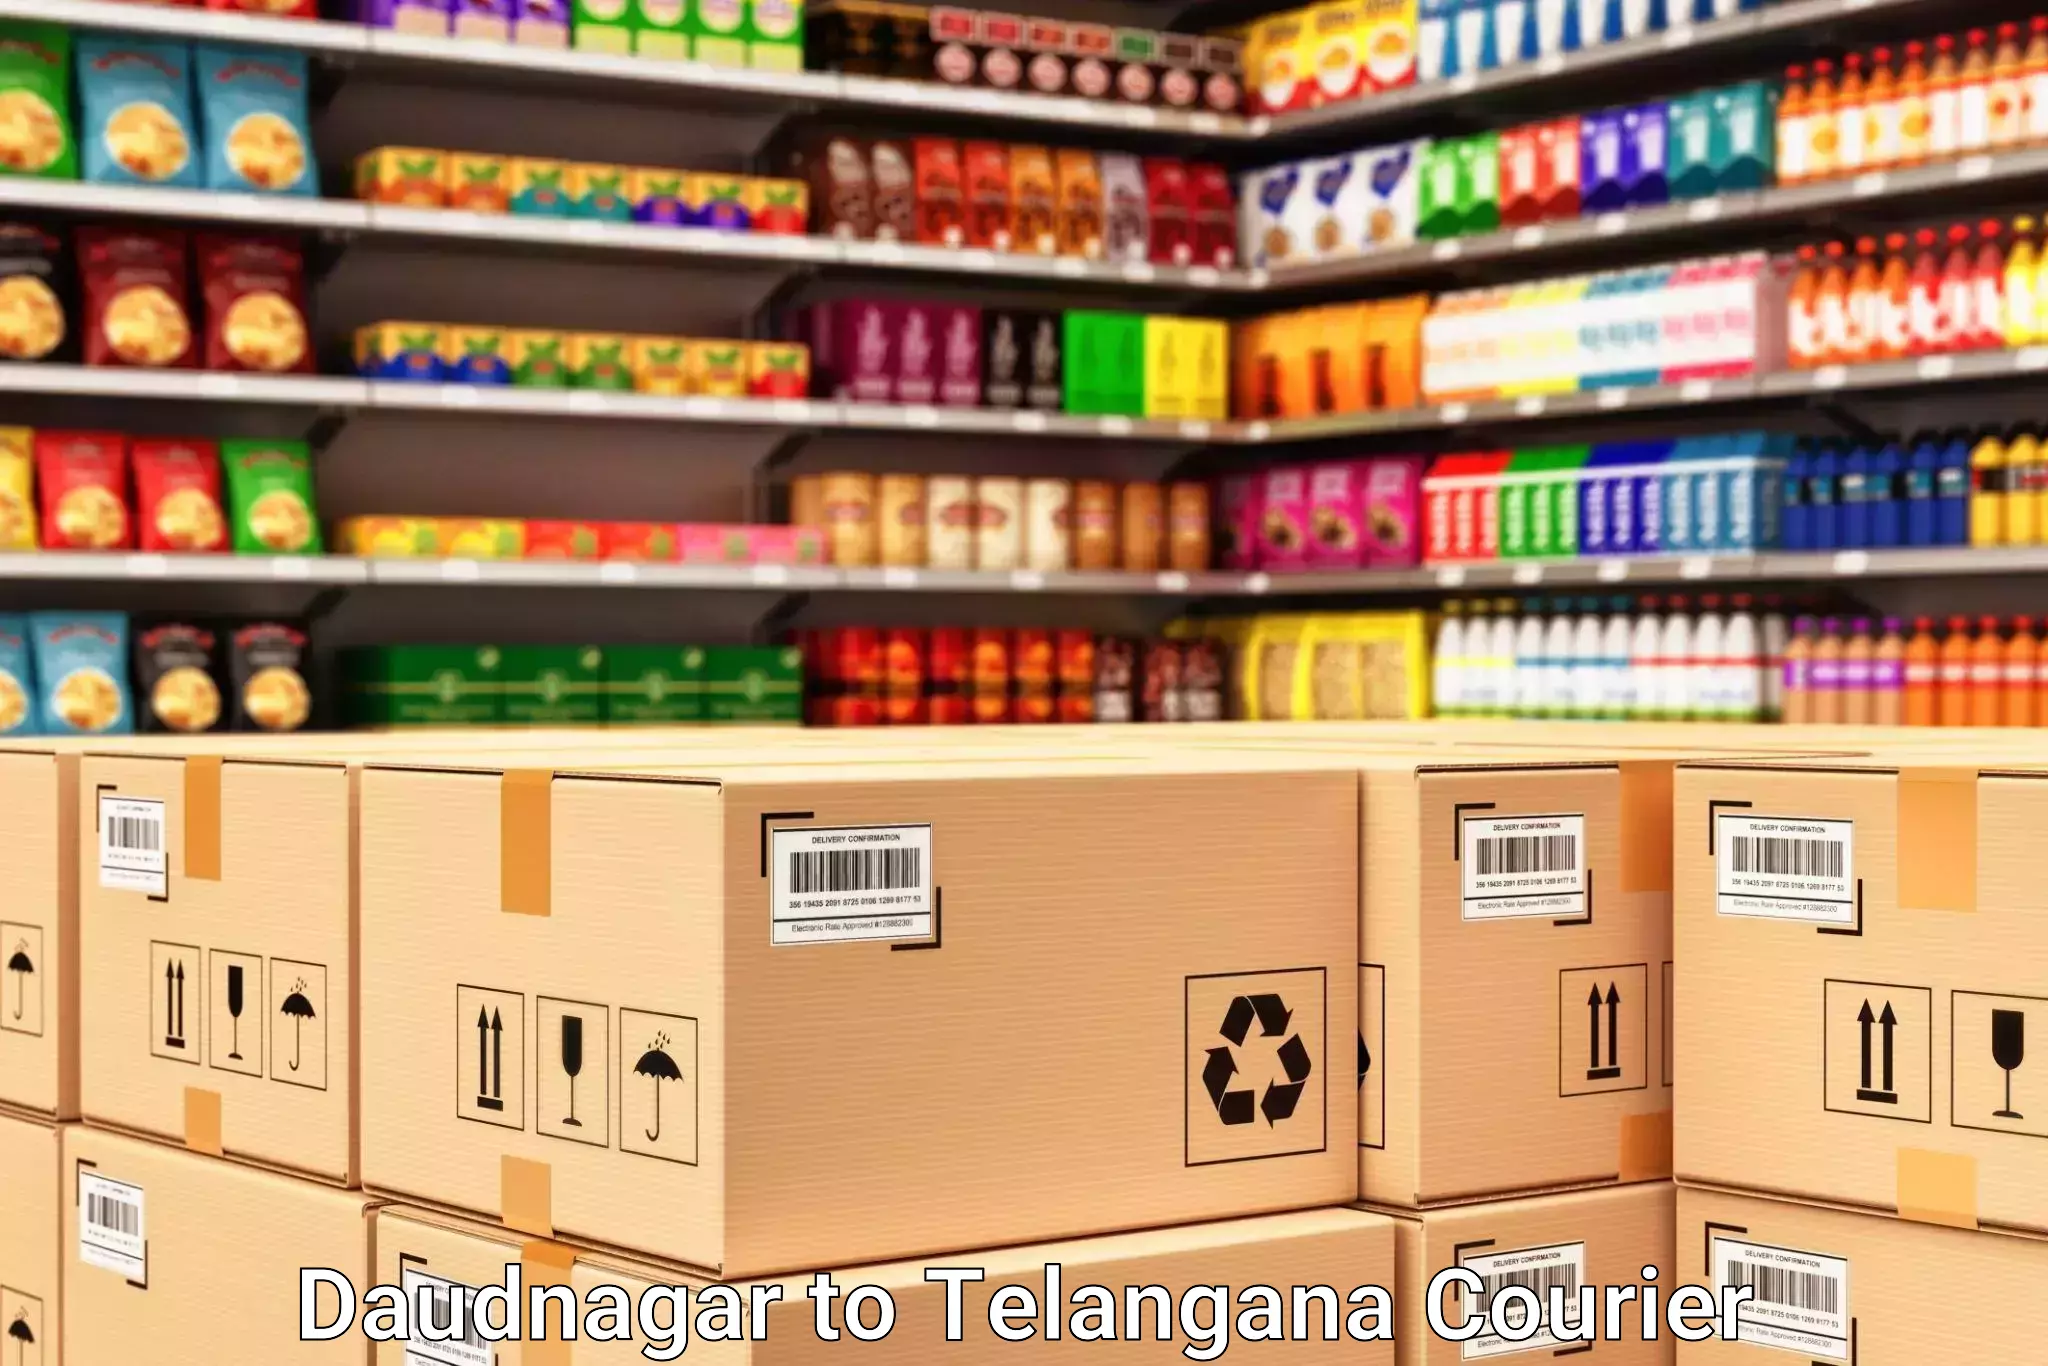 Luggage shipment processing Daudnagar to Chegunta